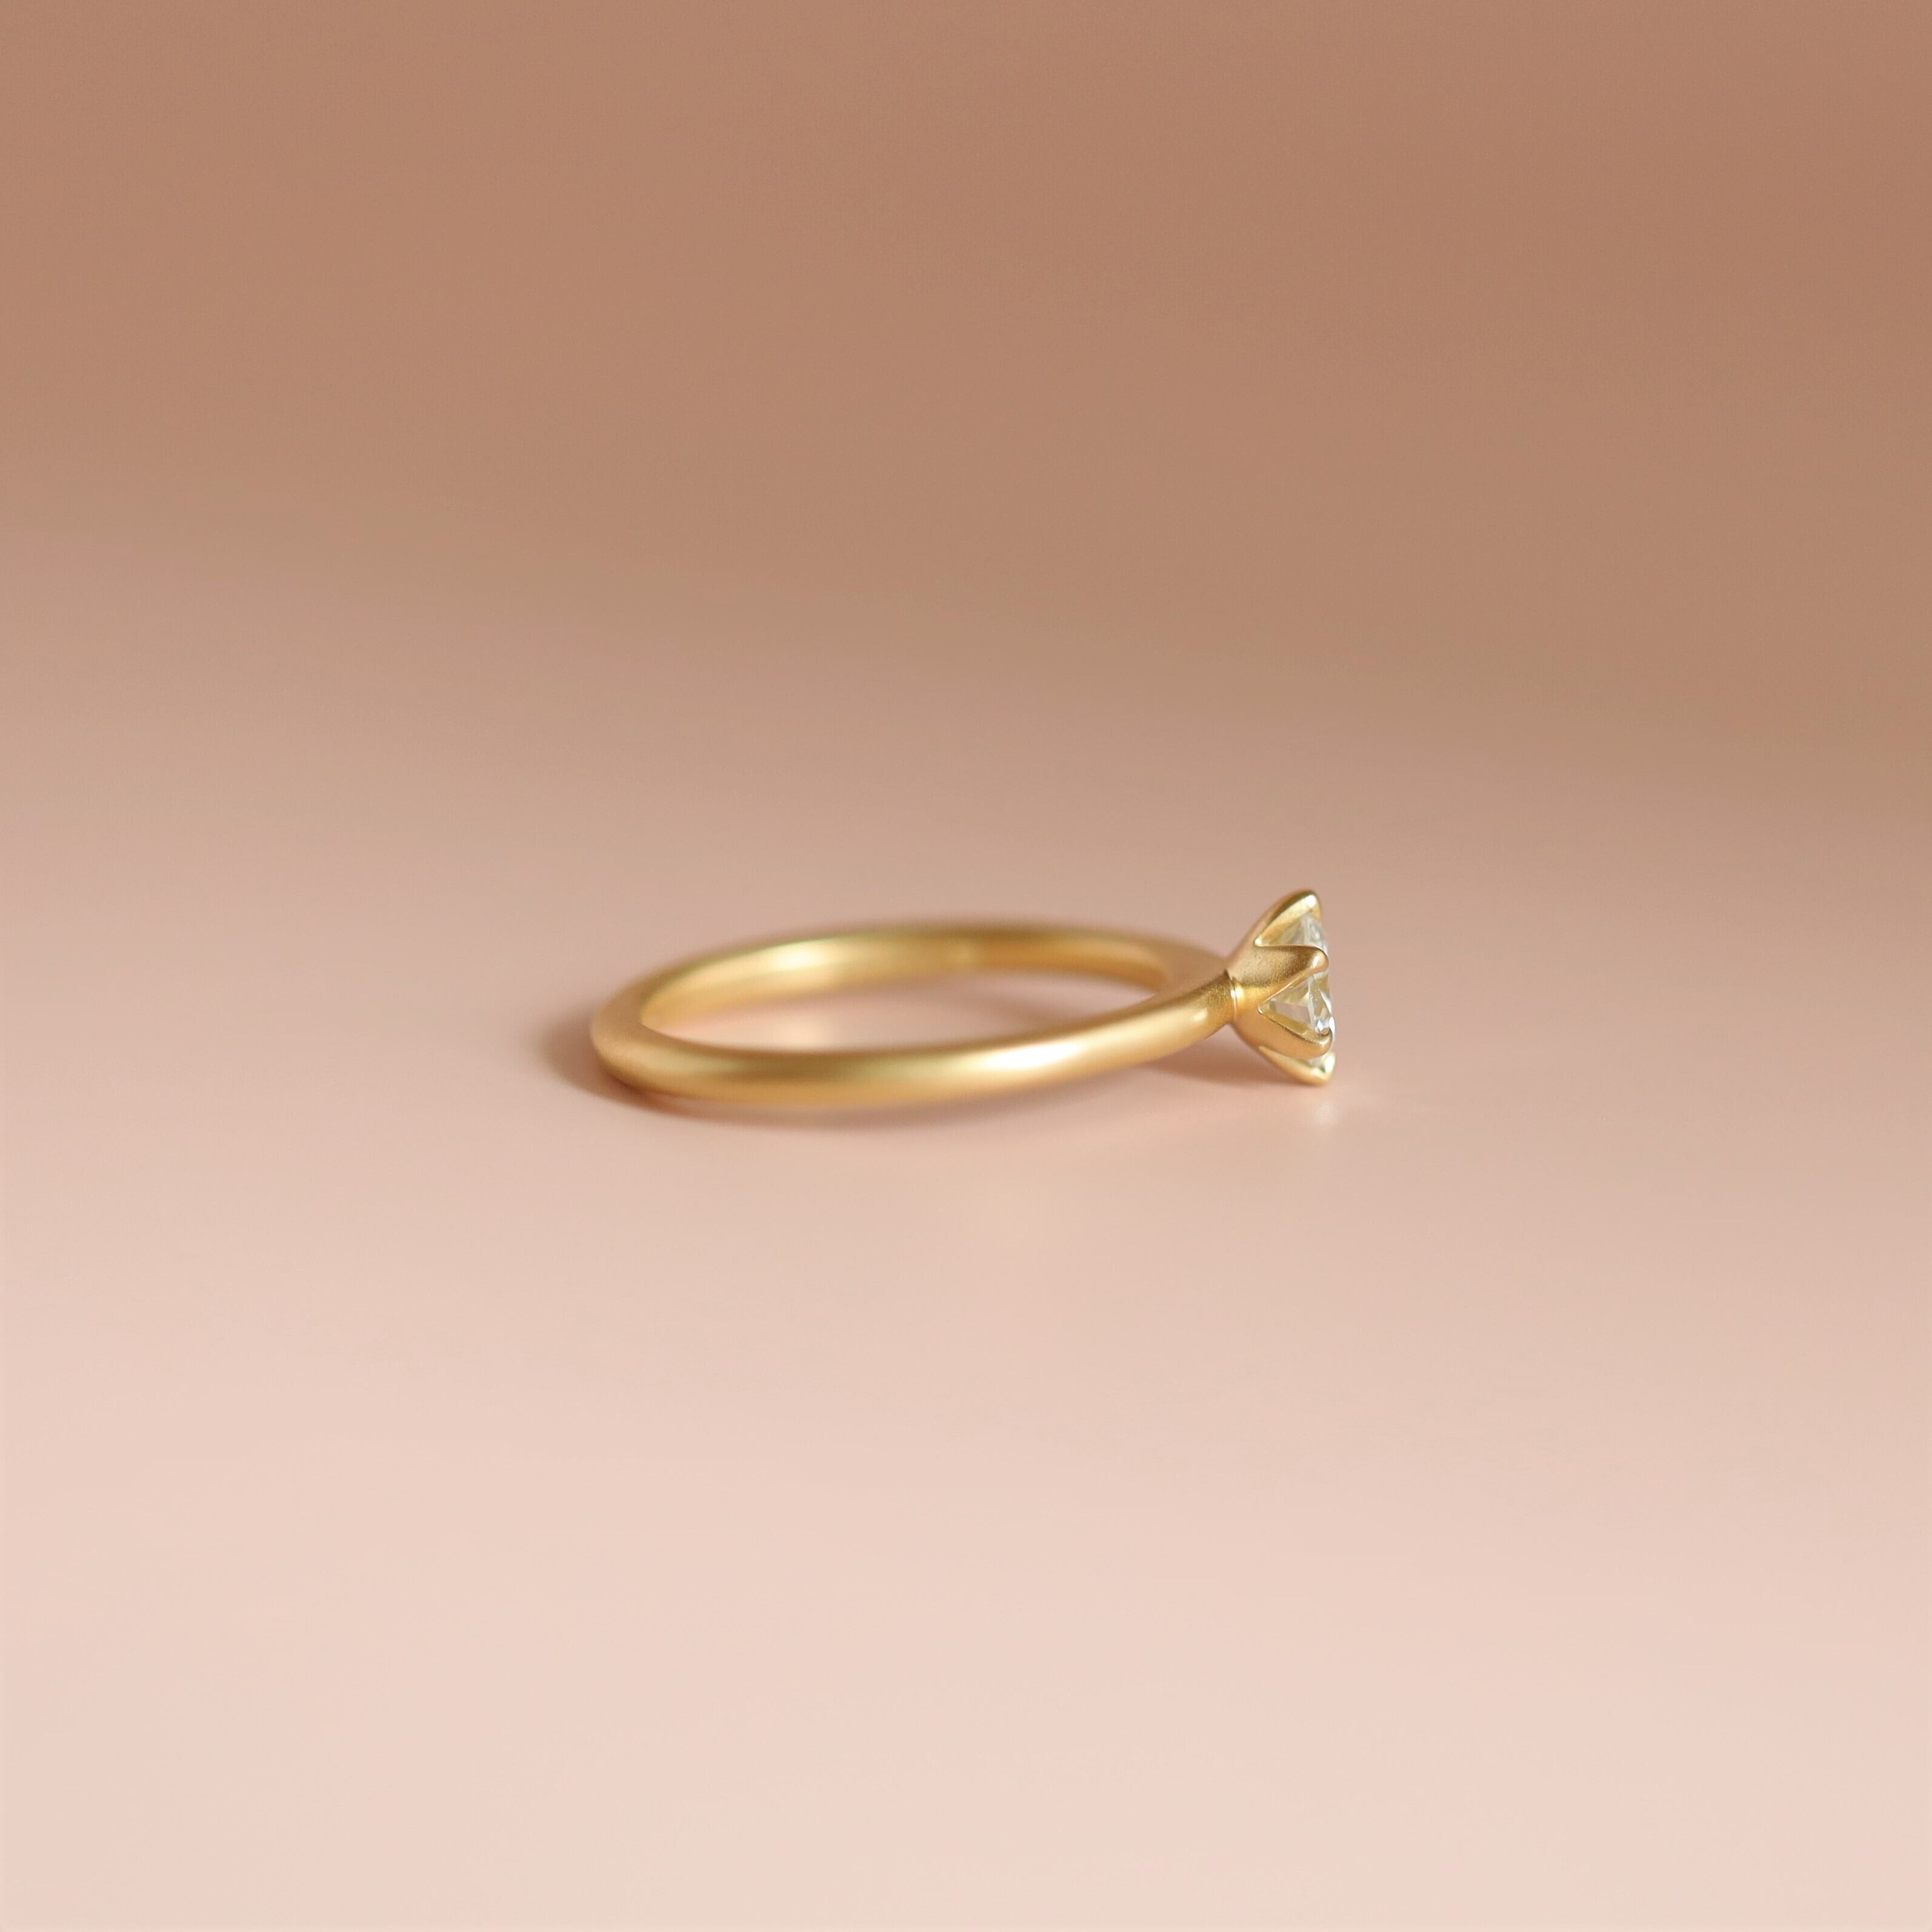 Tsubomi】つぼみの指輪 ダイヤモンド0.25ct エンゲージリング 婚約指輪